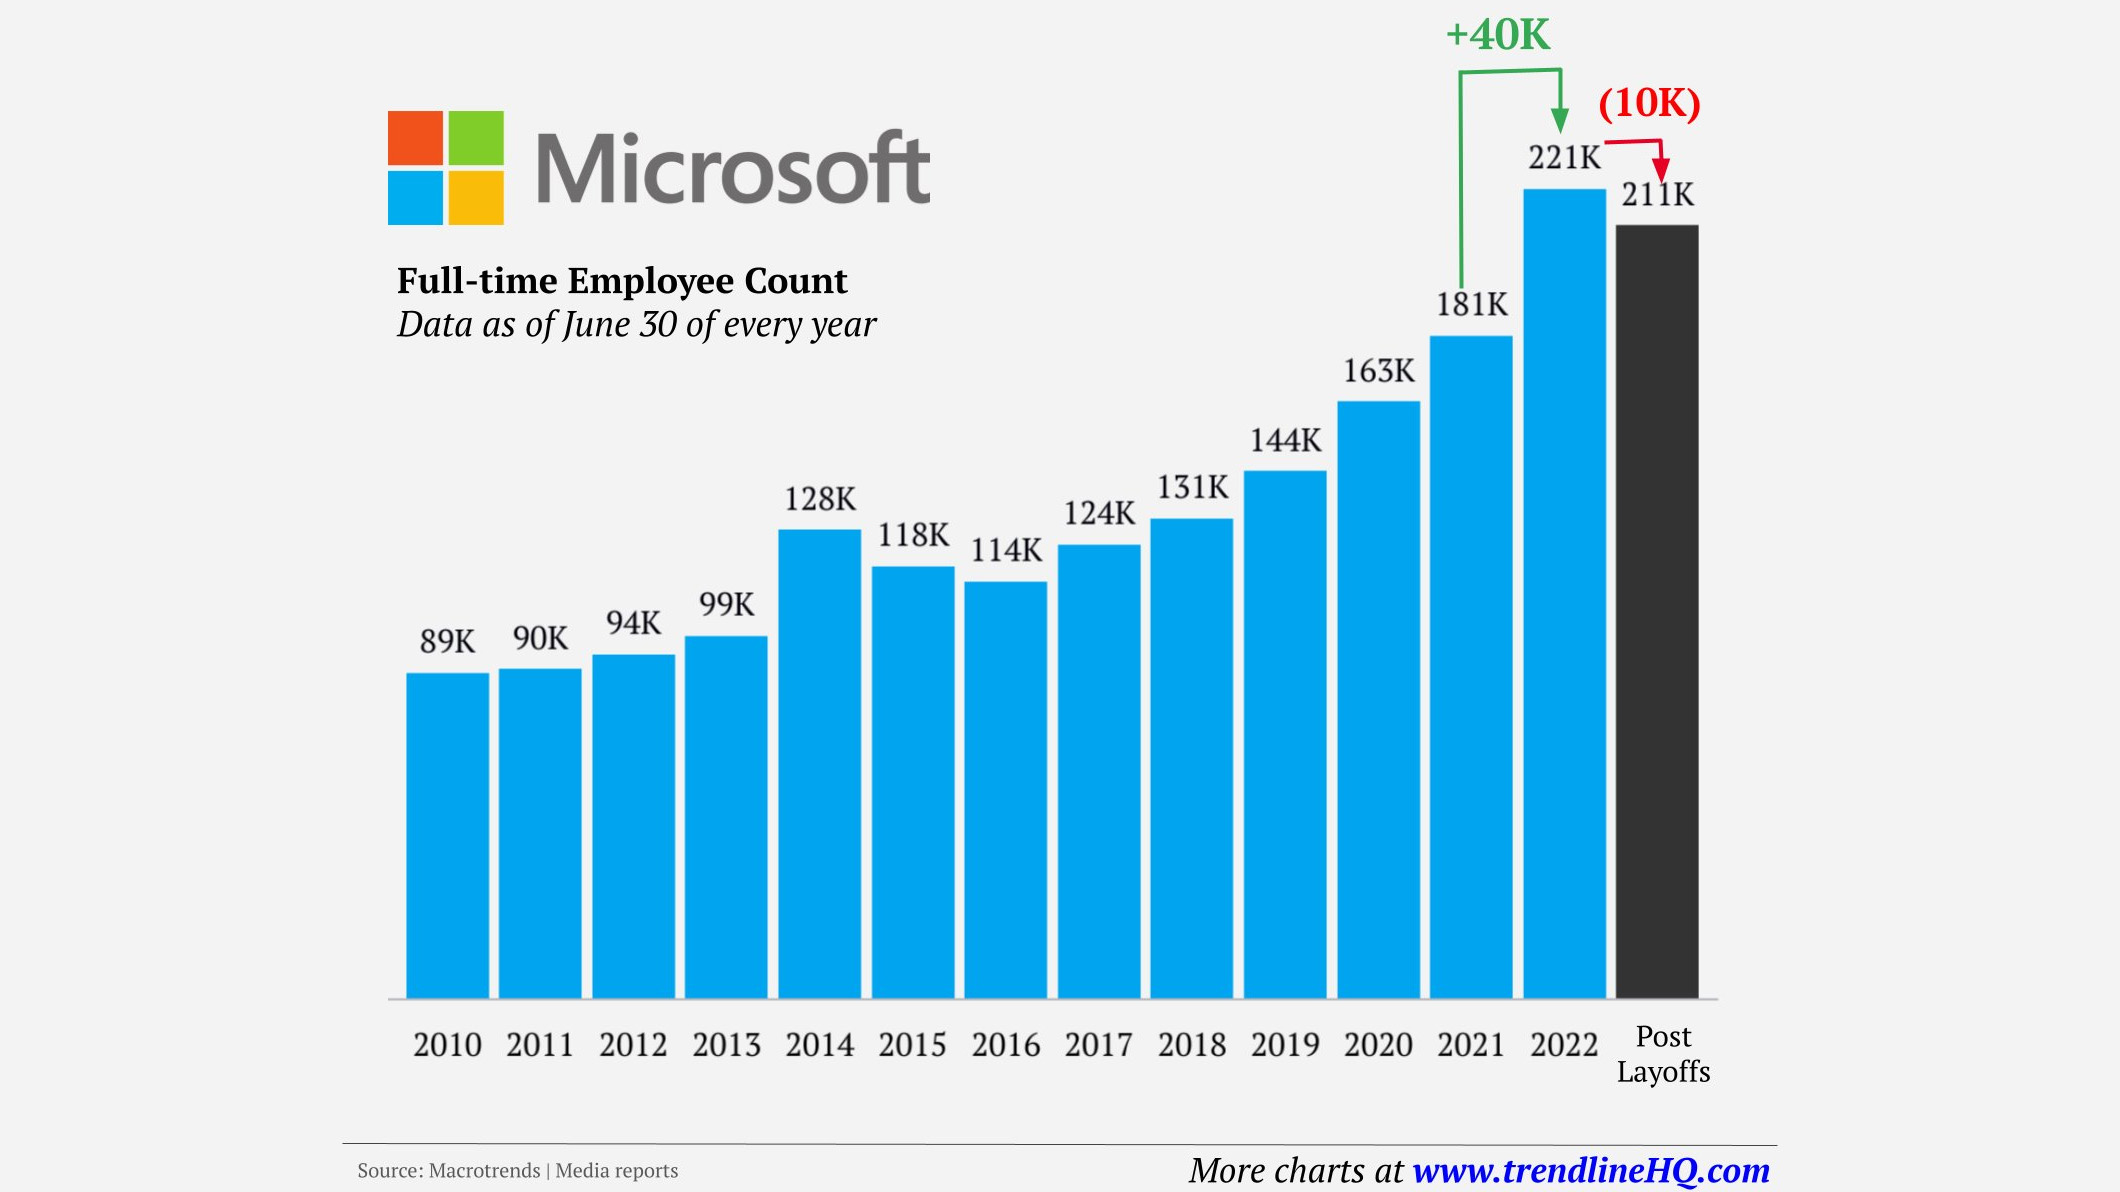 Gráfico mostrando o número de funcionários da Microsoft ao longo do tempo, que atingiu o pico no ano passado para 221 mil e agora caiu para 211 mil após um aumento constante impulsionado pelo aumento da pandemia.